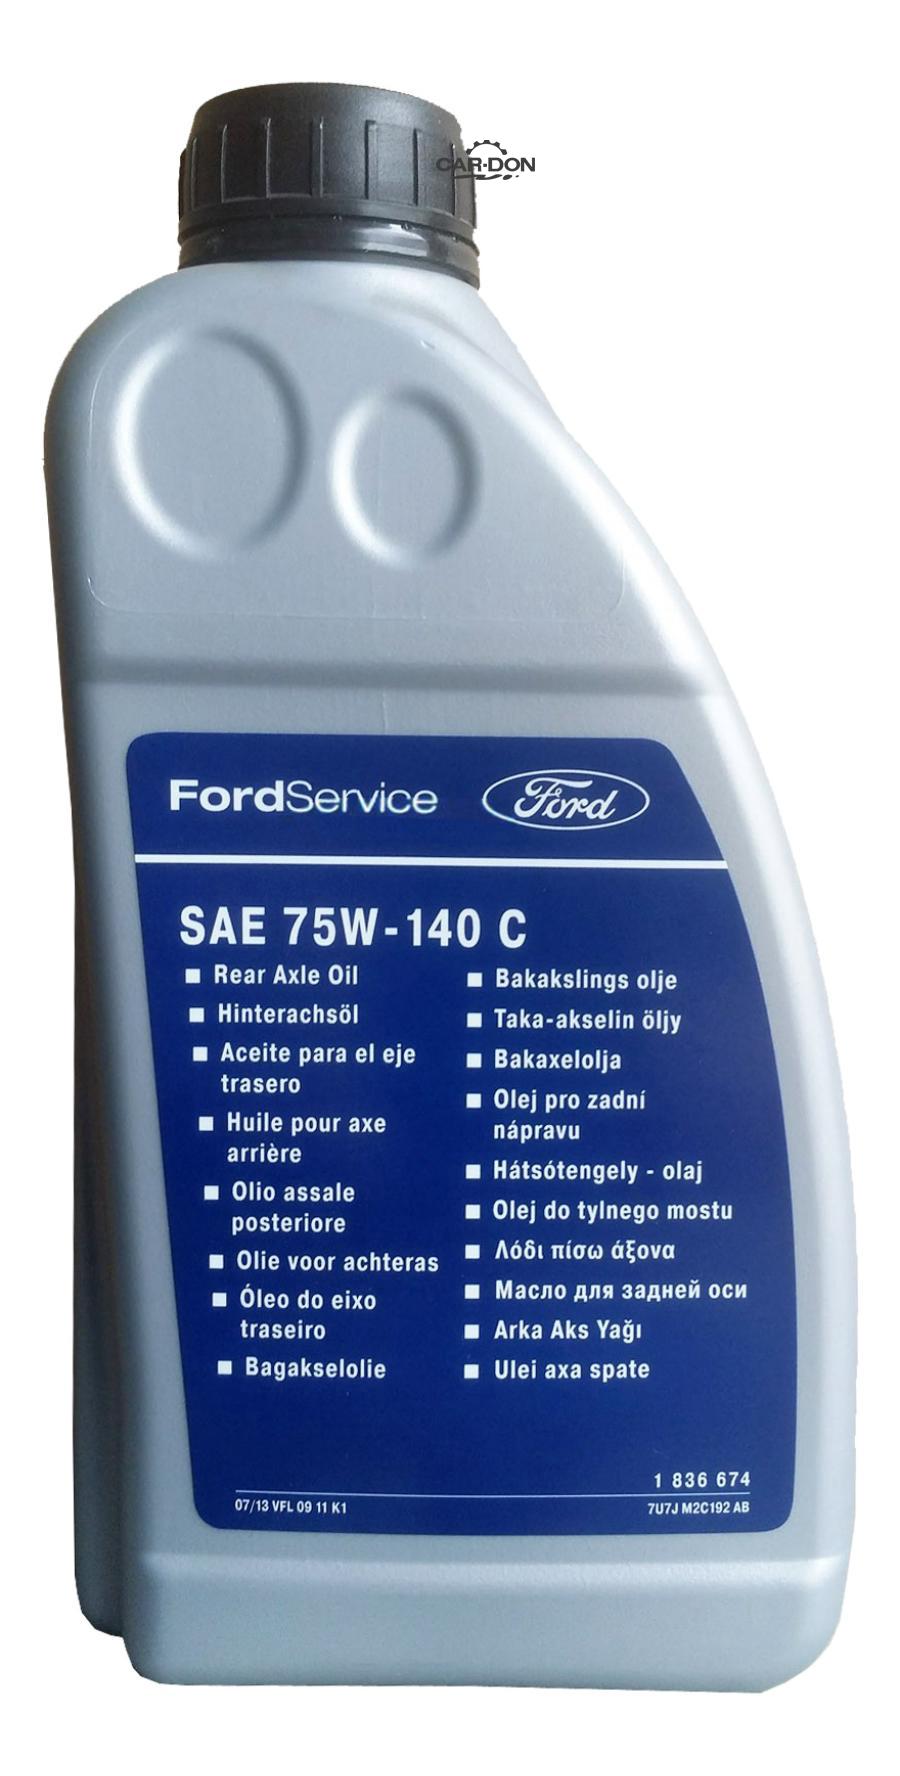 Трансмиссионное масло 75w 140. 1547953 Масло трансмиссионное Ford. Ford 75w140. Масло Форд 75w140. SAE 75w140 трансмиссионное масло.